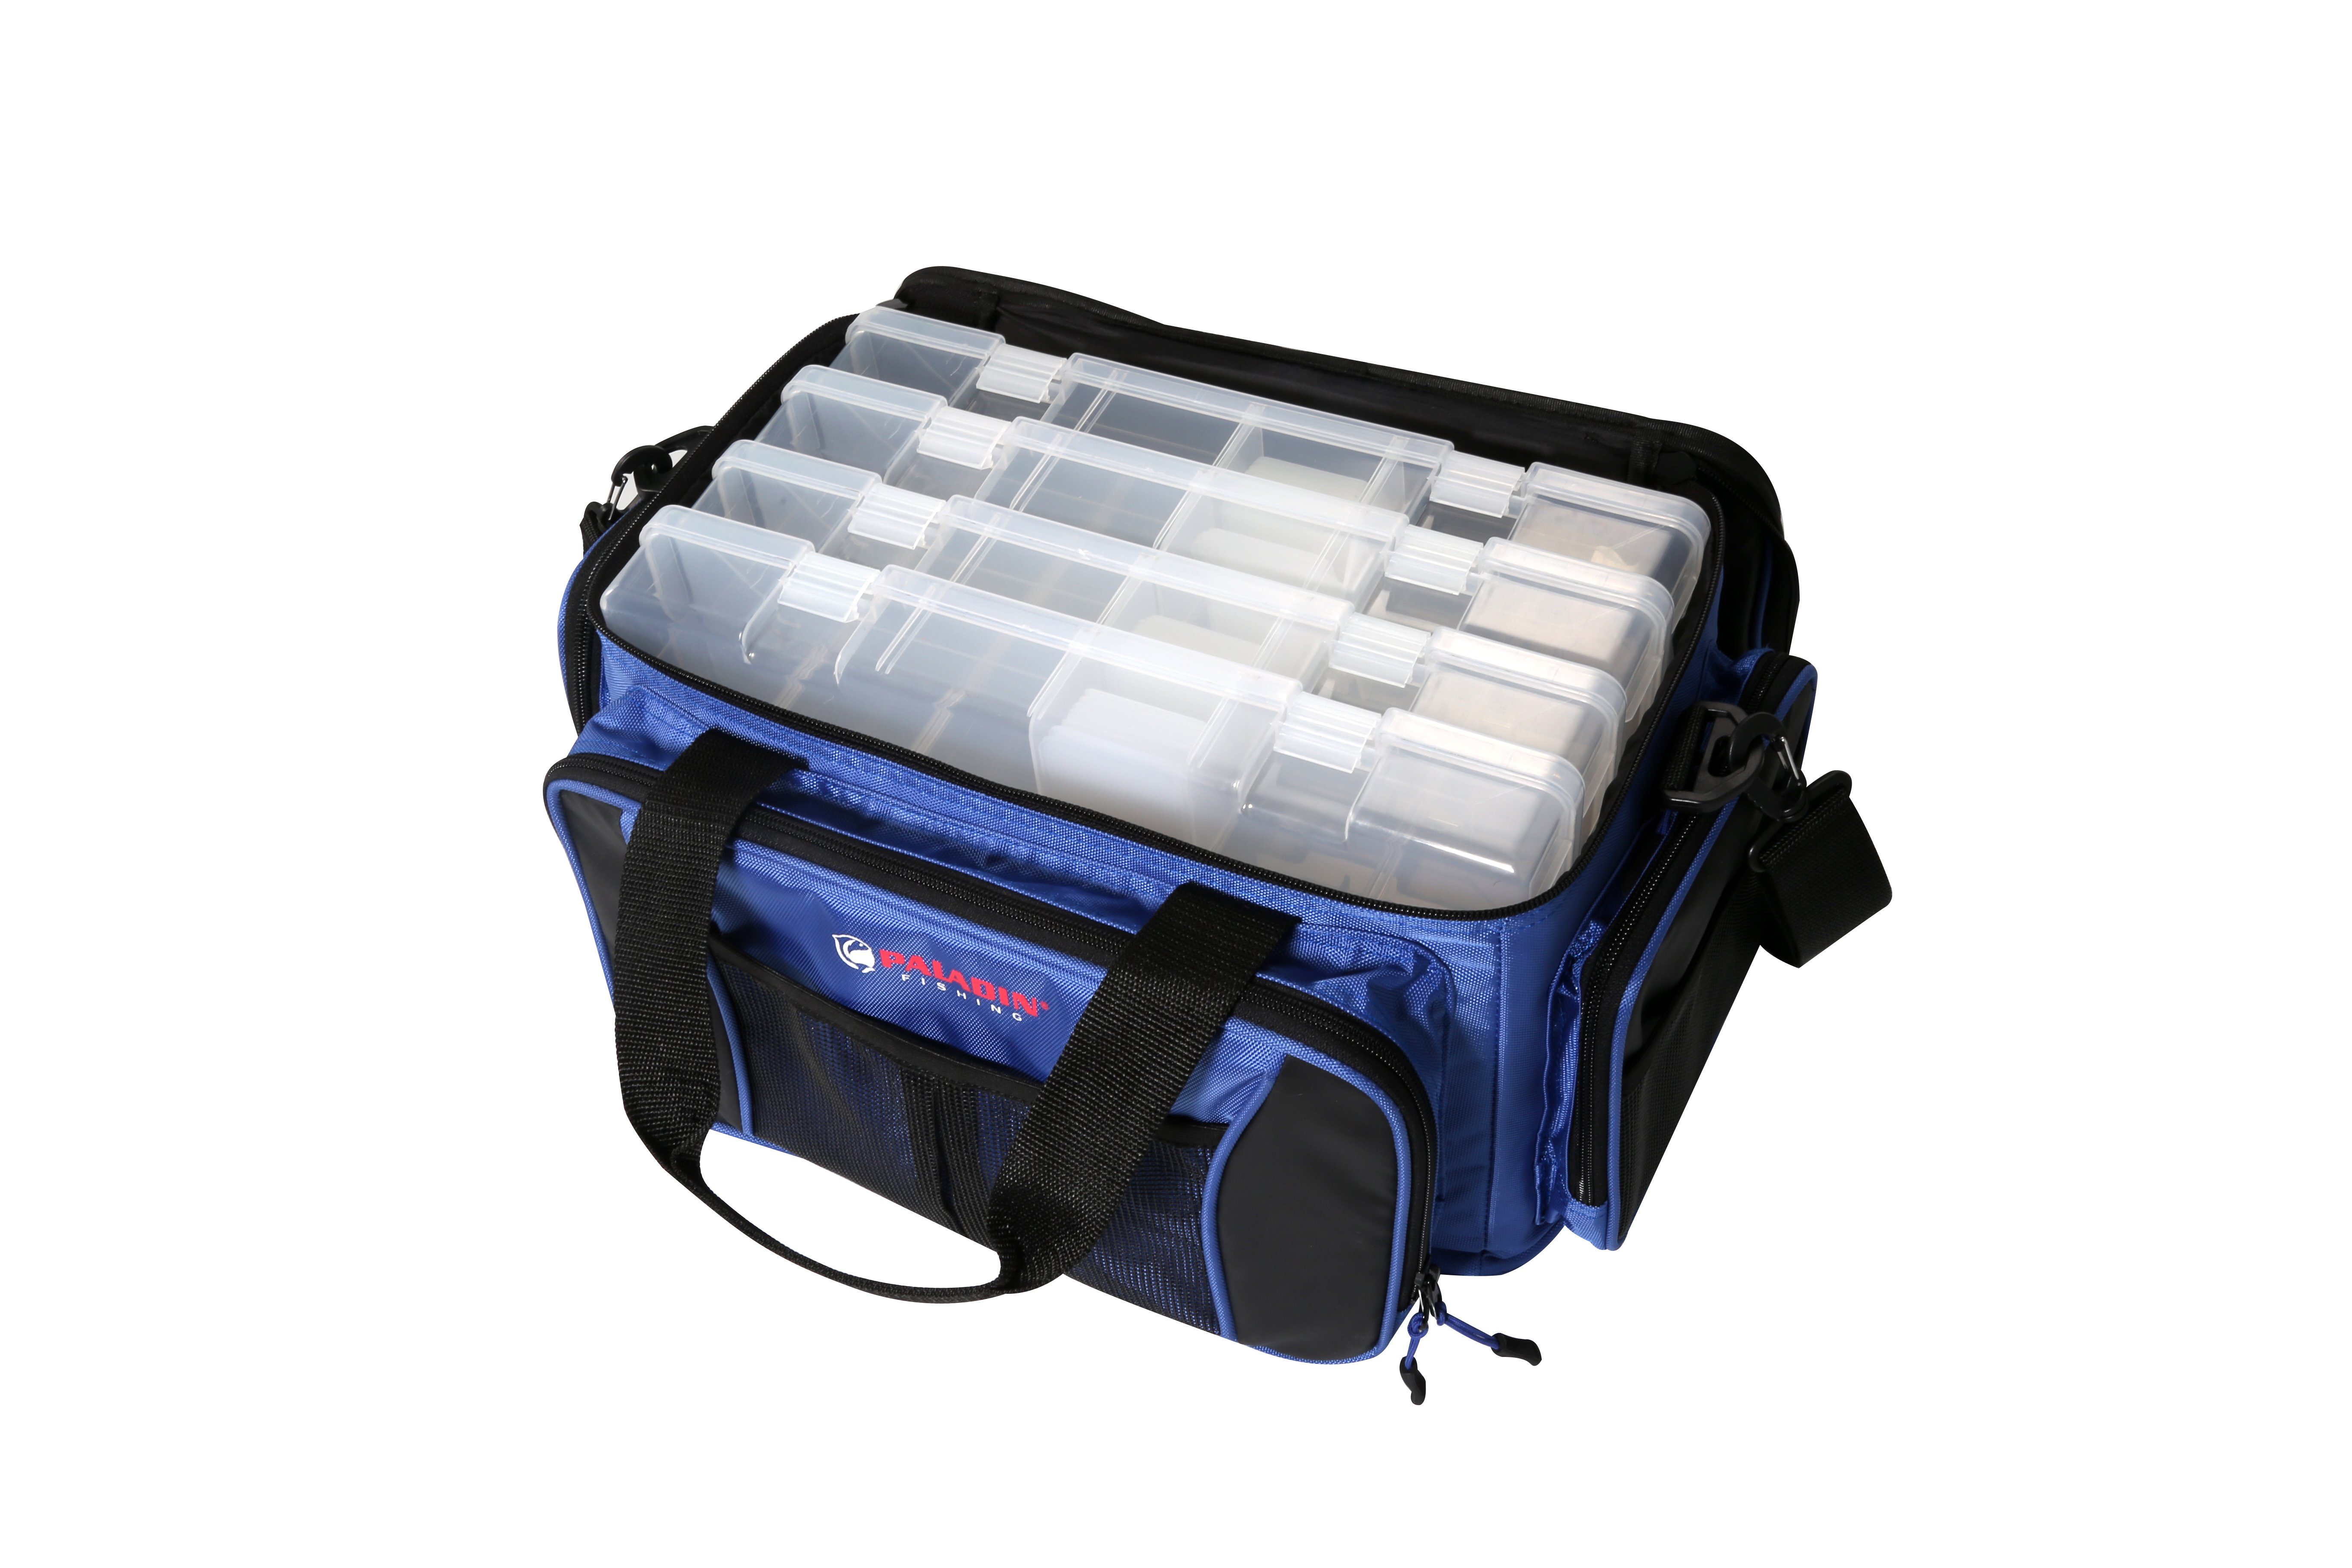 Paladin Angelkoffer Boxentasche (Boxentasche mit 4 Plastikboxen), Angeltasche mit vielen Taschen und Stauraum